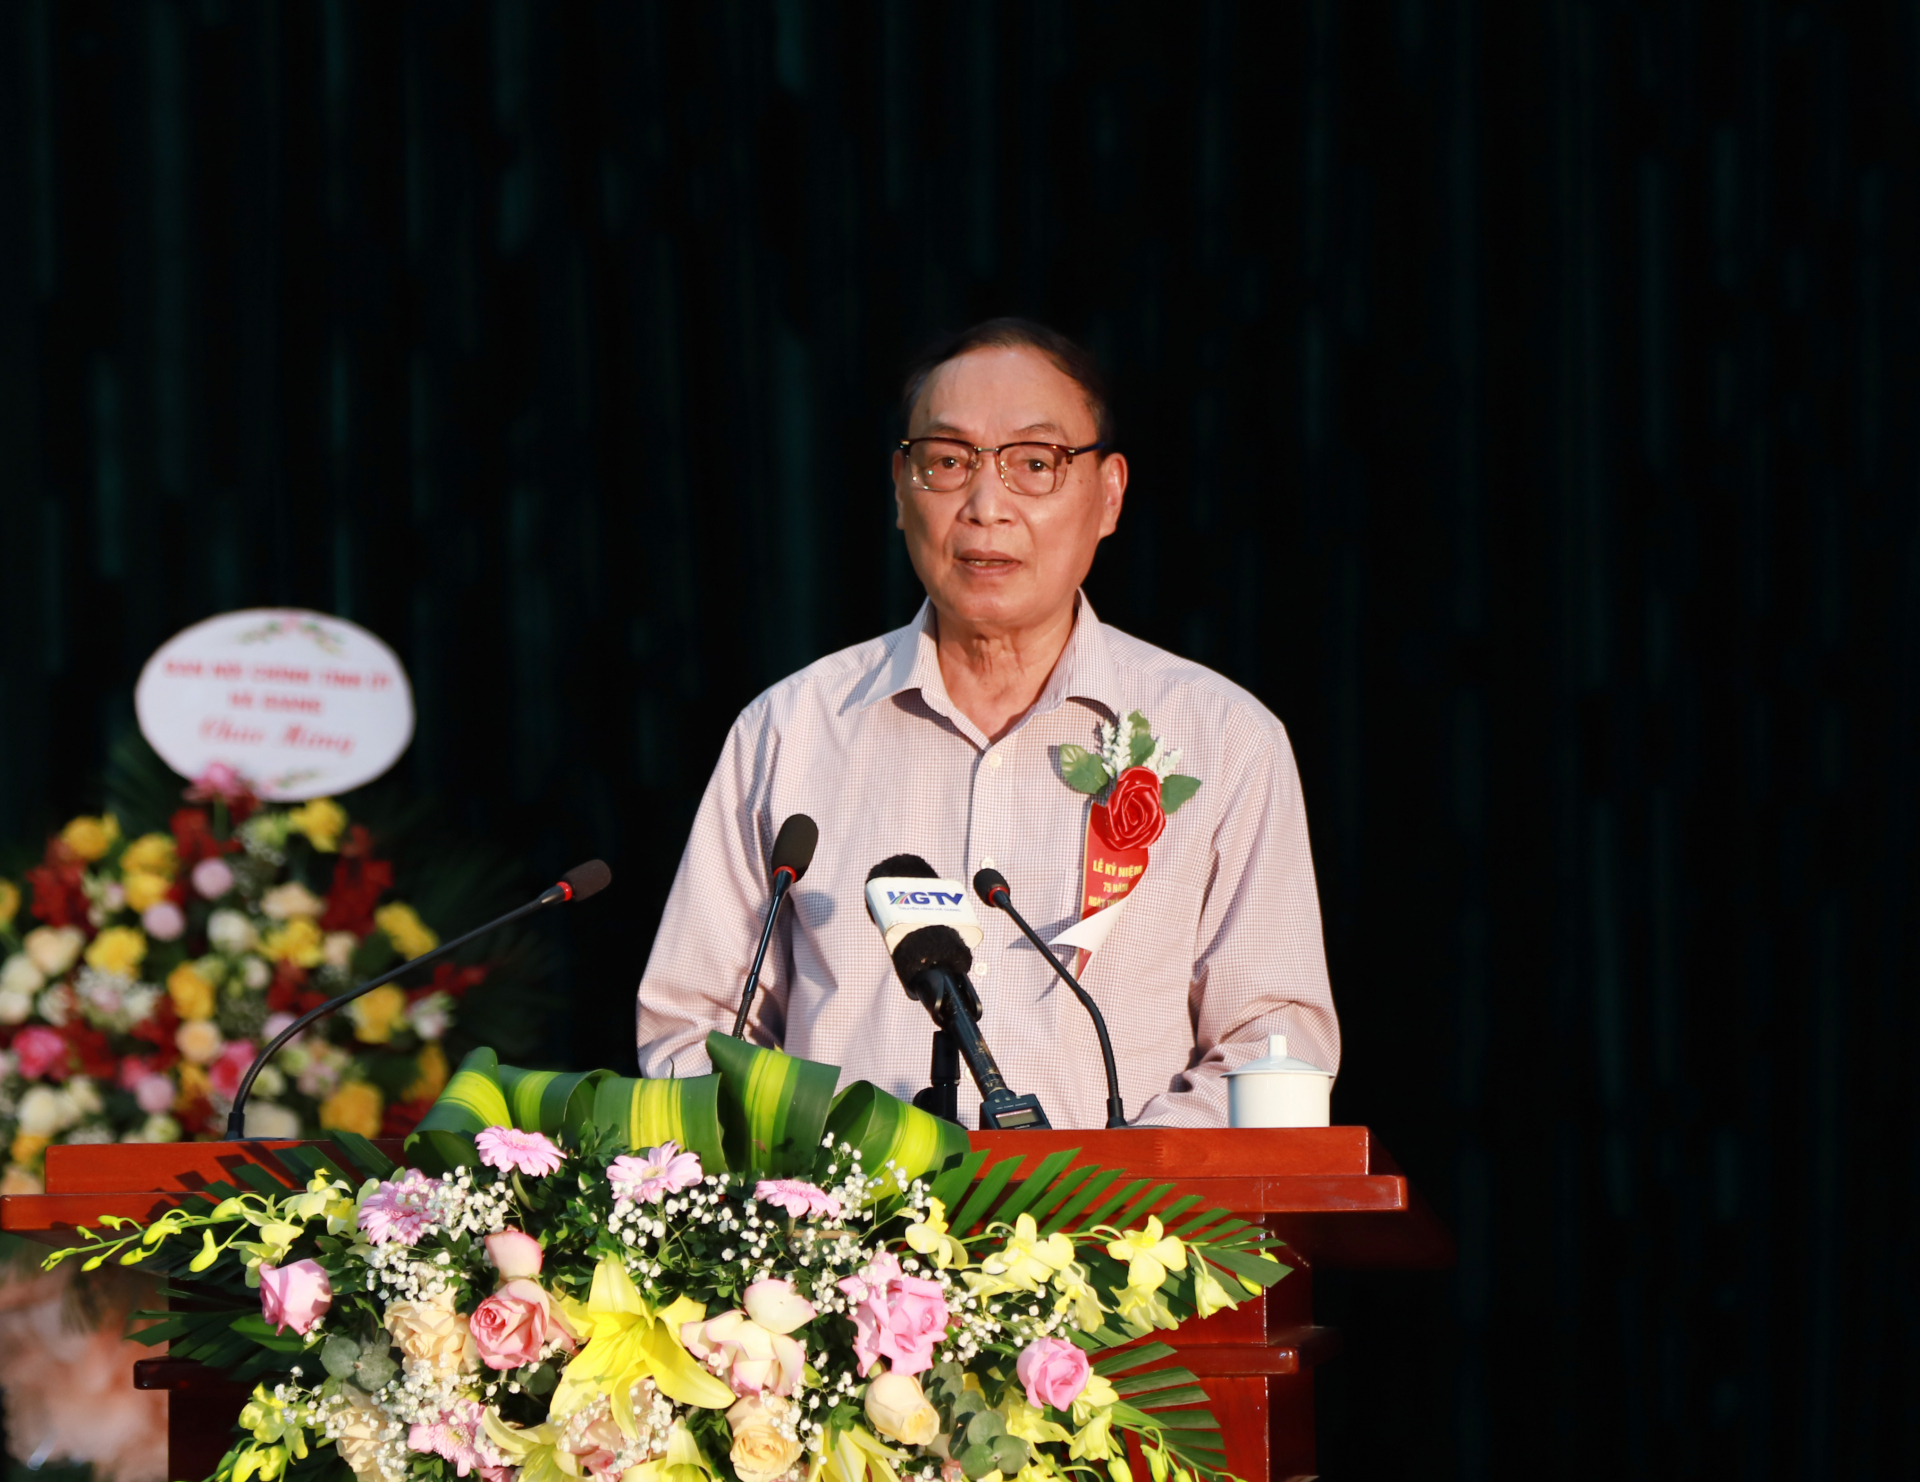 Đồng chí Hoàng Đình Châm, nguyên Phó Chủ tịch UBND tỉnh, nguyên Bí thư Huyện ủy Bắc Quang đại diện cán bộ lão thành phát biểu tại buổi lễ